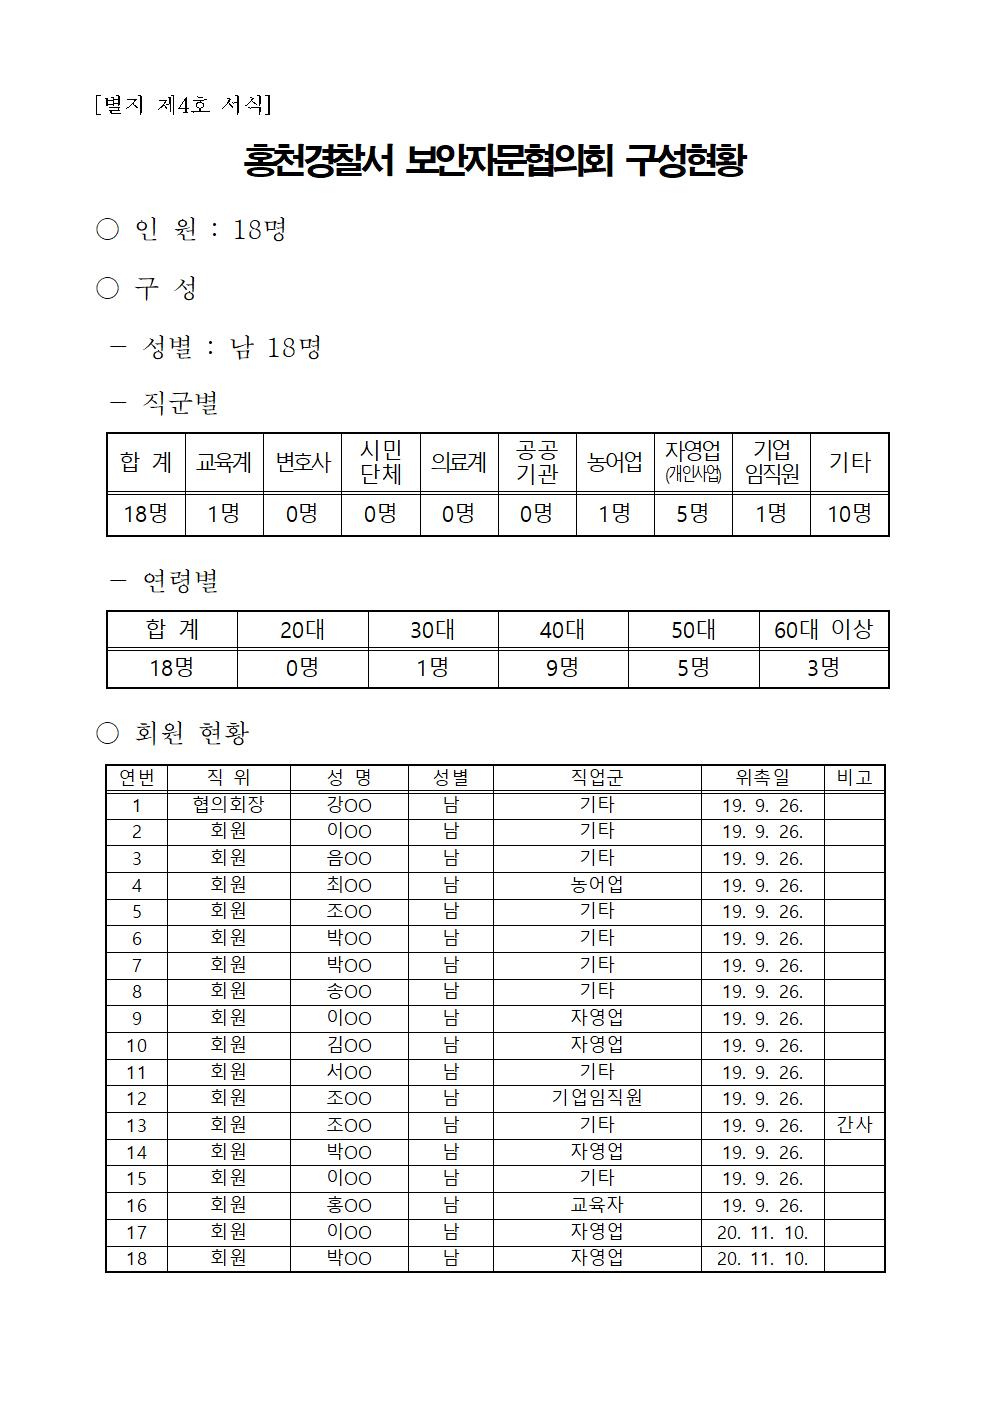 홍천경찰서 보안자문위원회 현황-보안자문협의회 구성현황